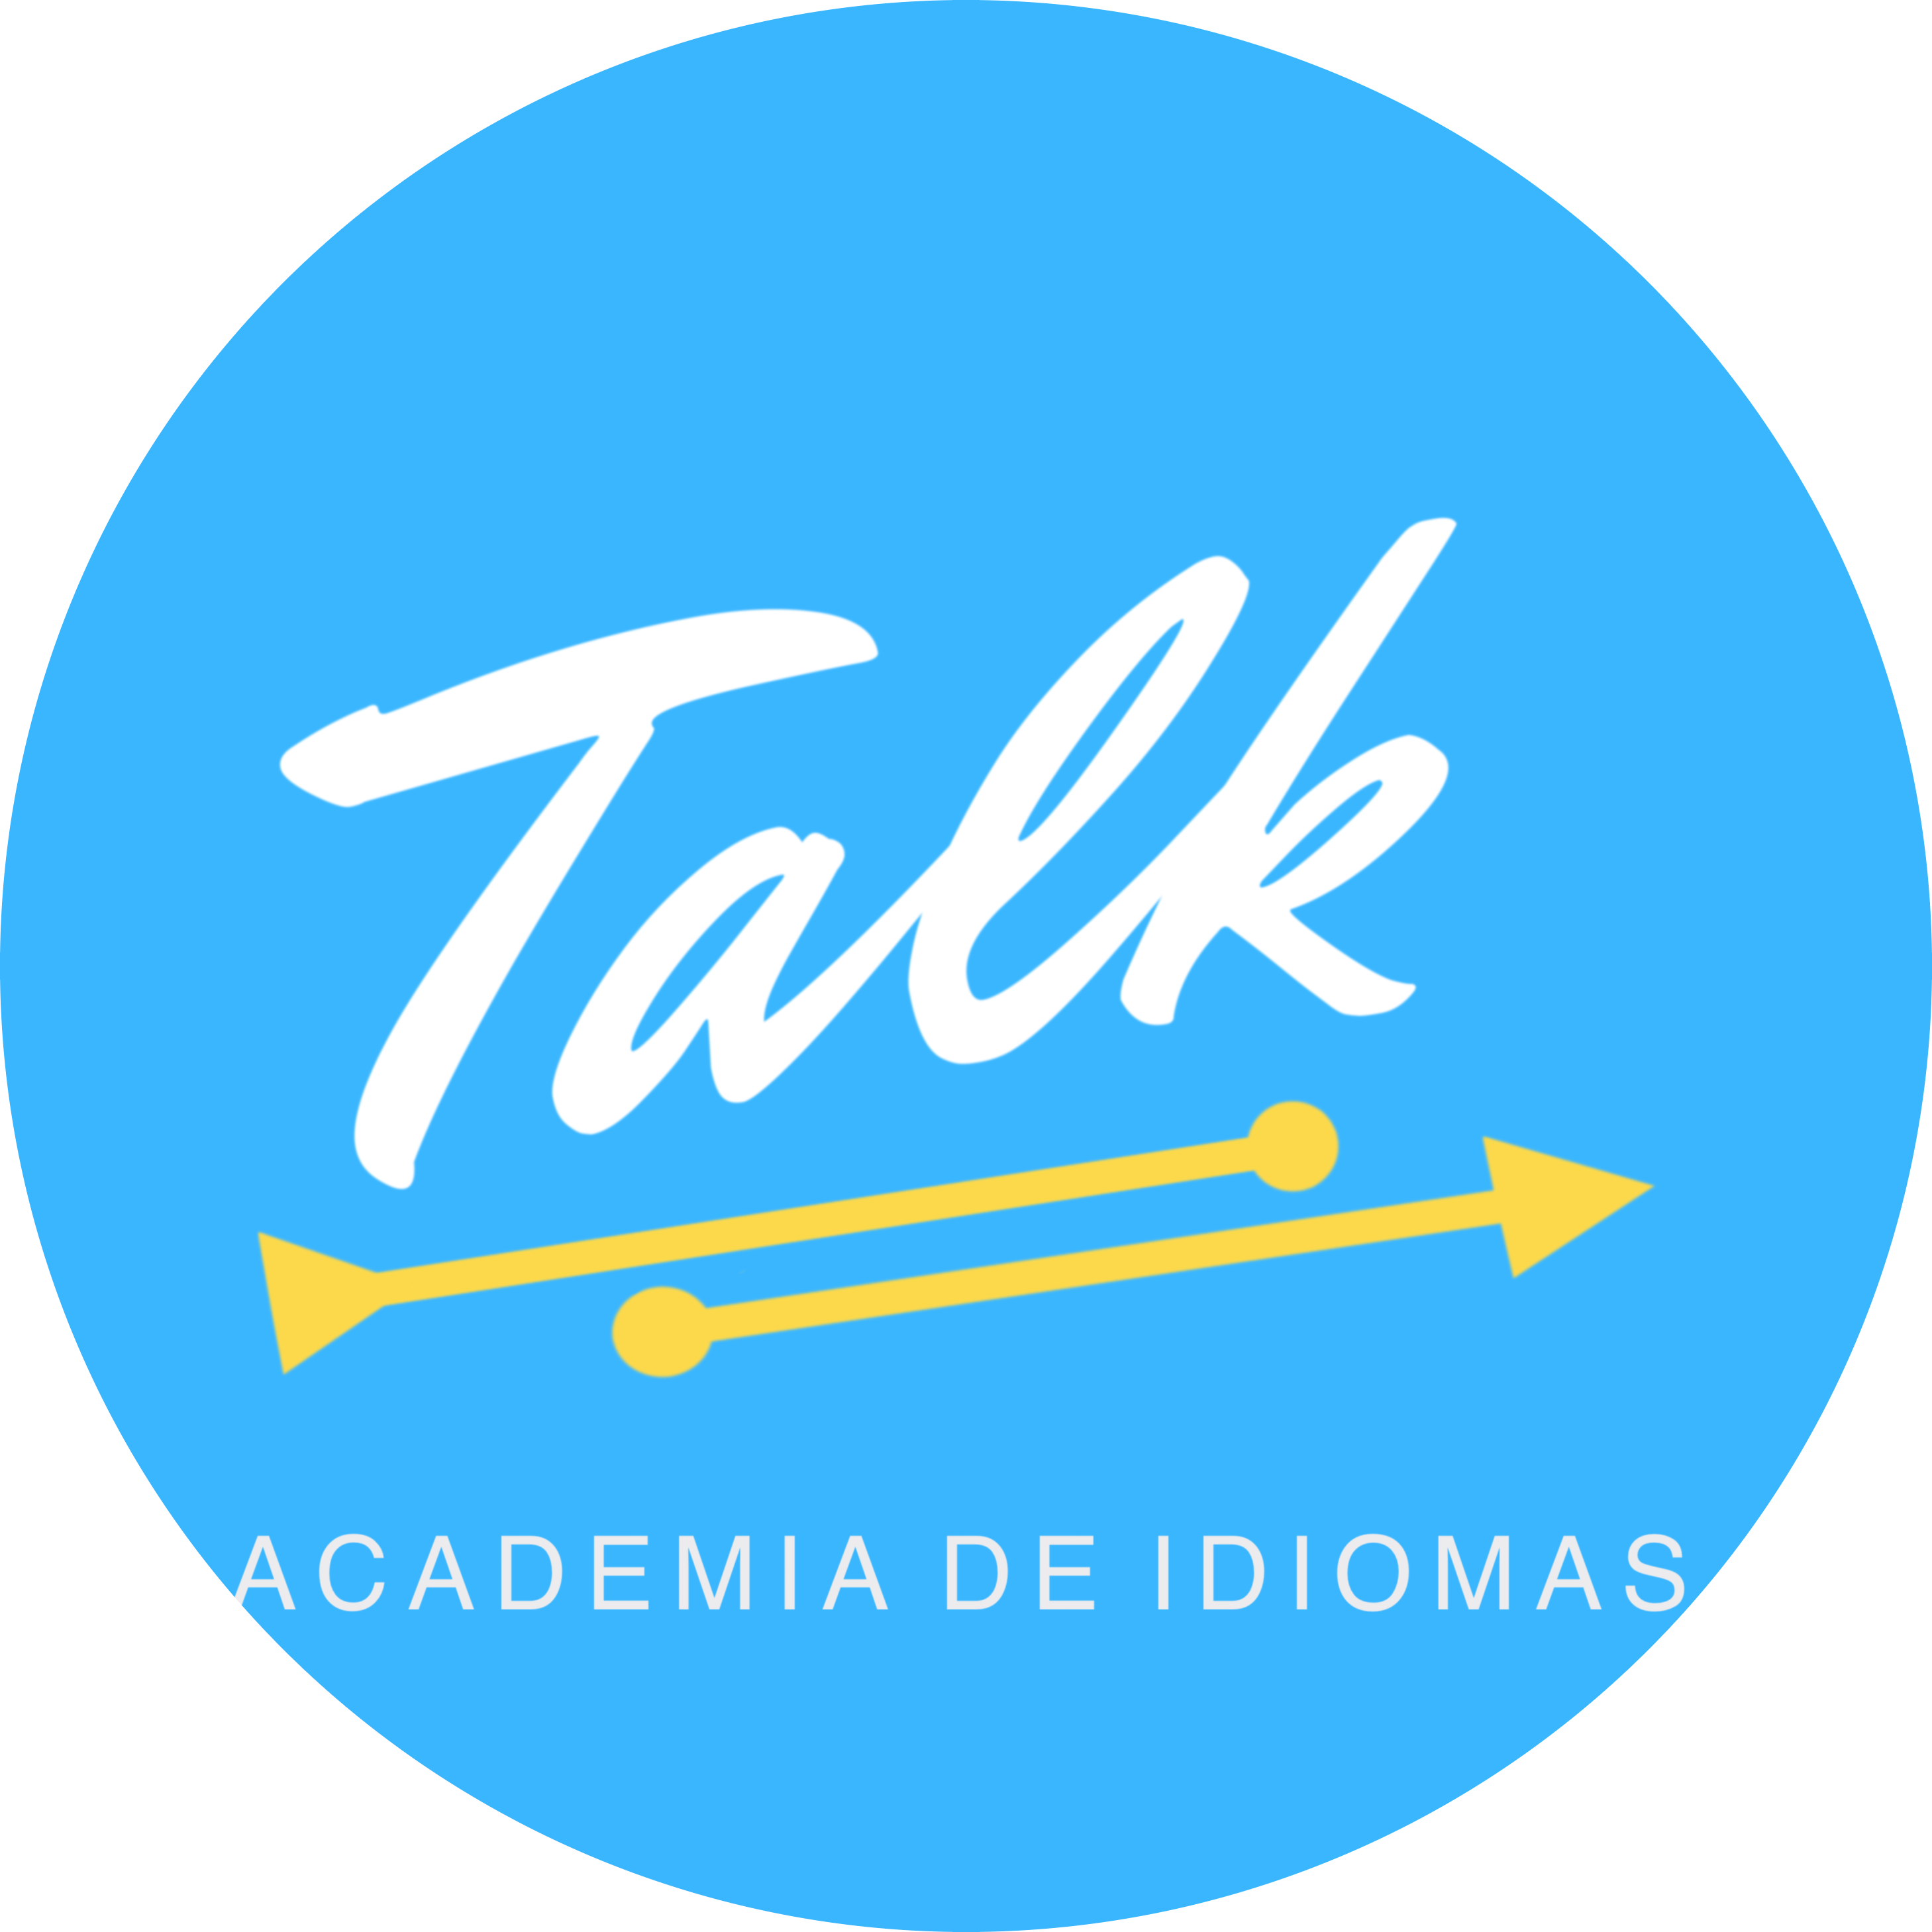 Talk| Academia de Idiomas